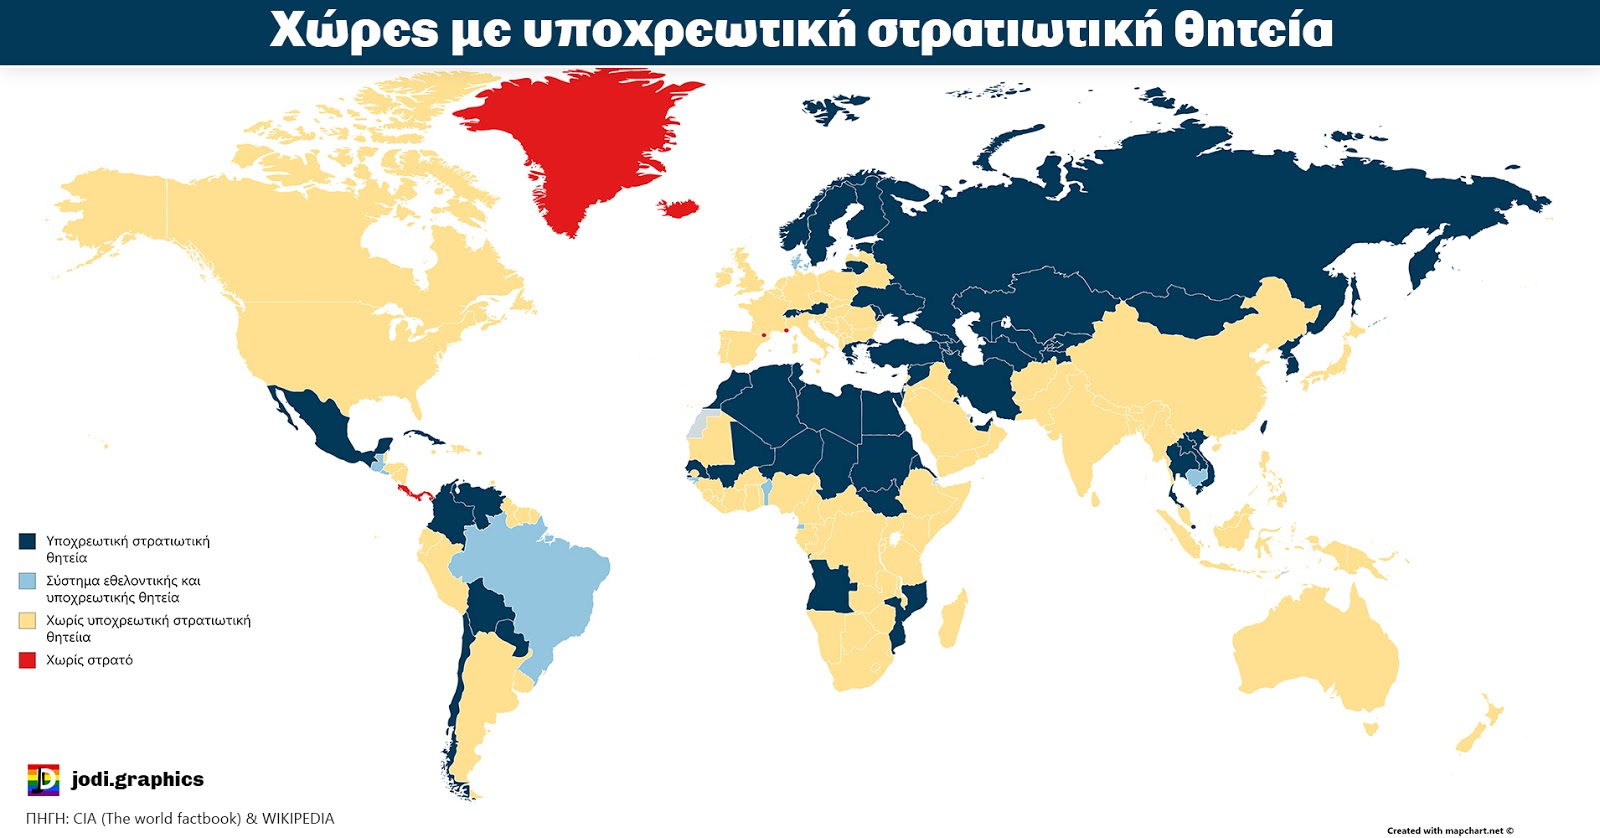 Ποιες χώρες του κόσμου έχουν υποχρεωτική στρατιωτική θητεία; - Φωτογραφία 1